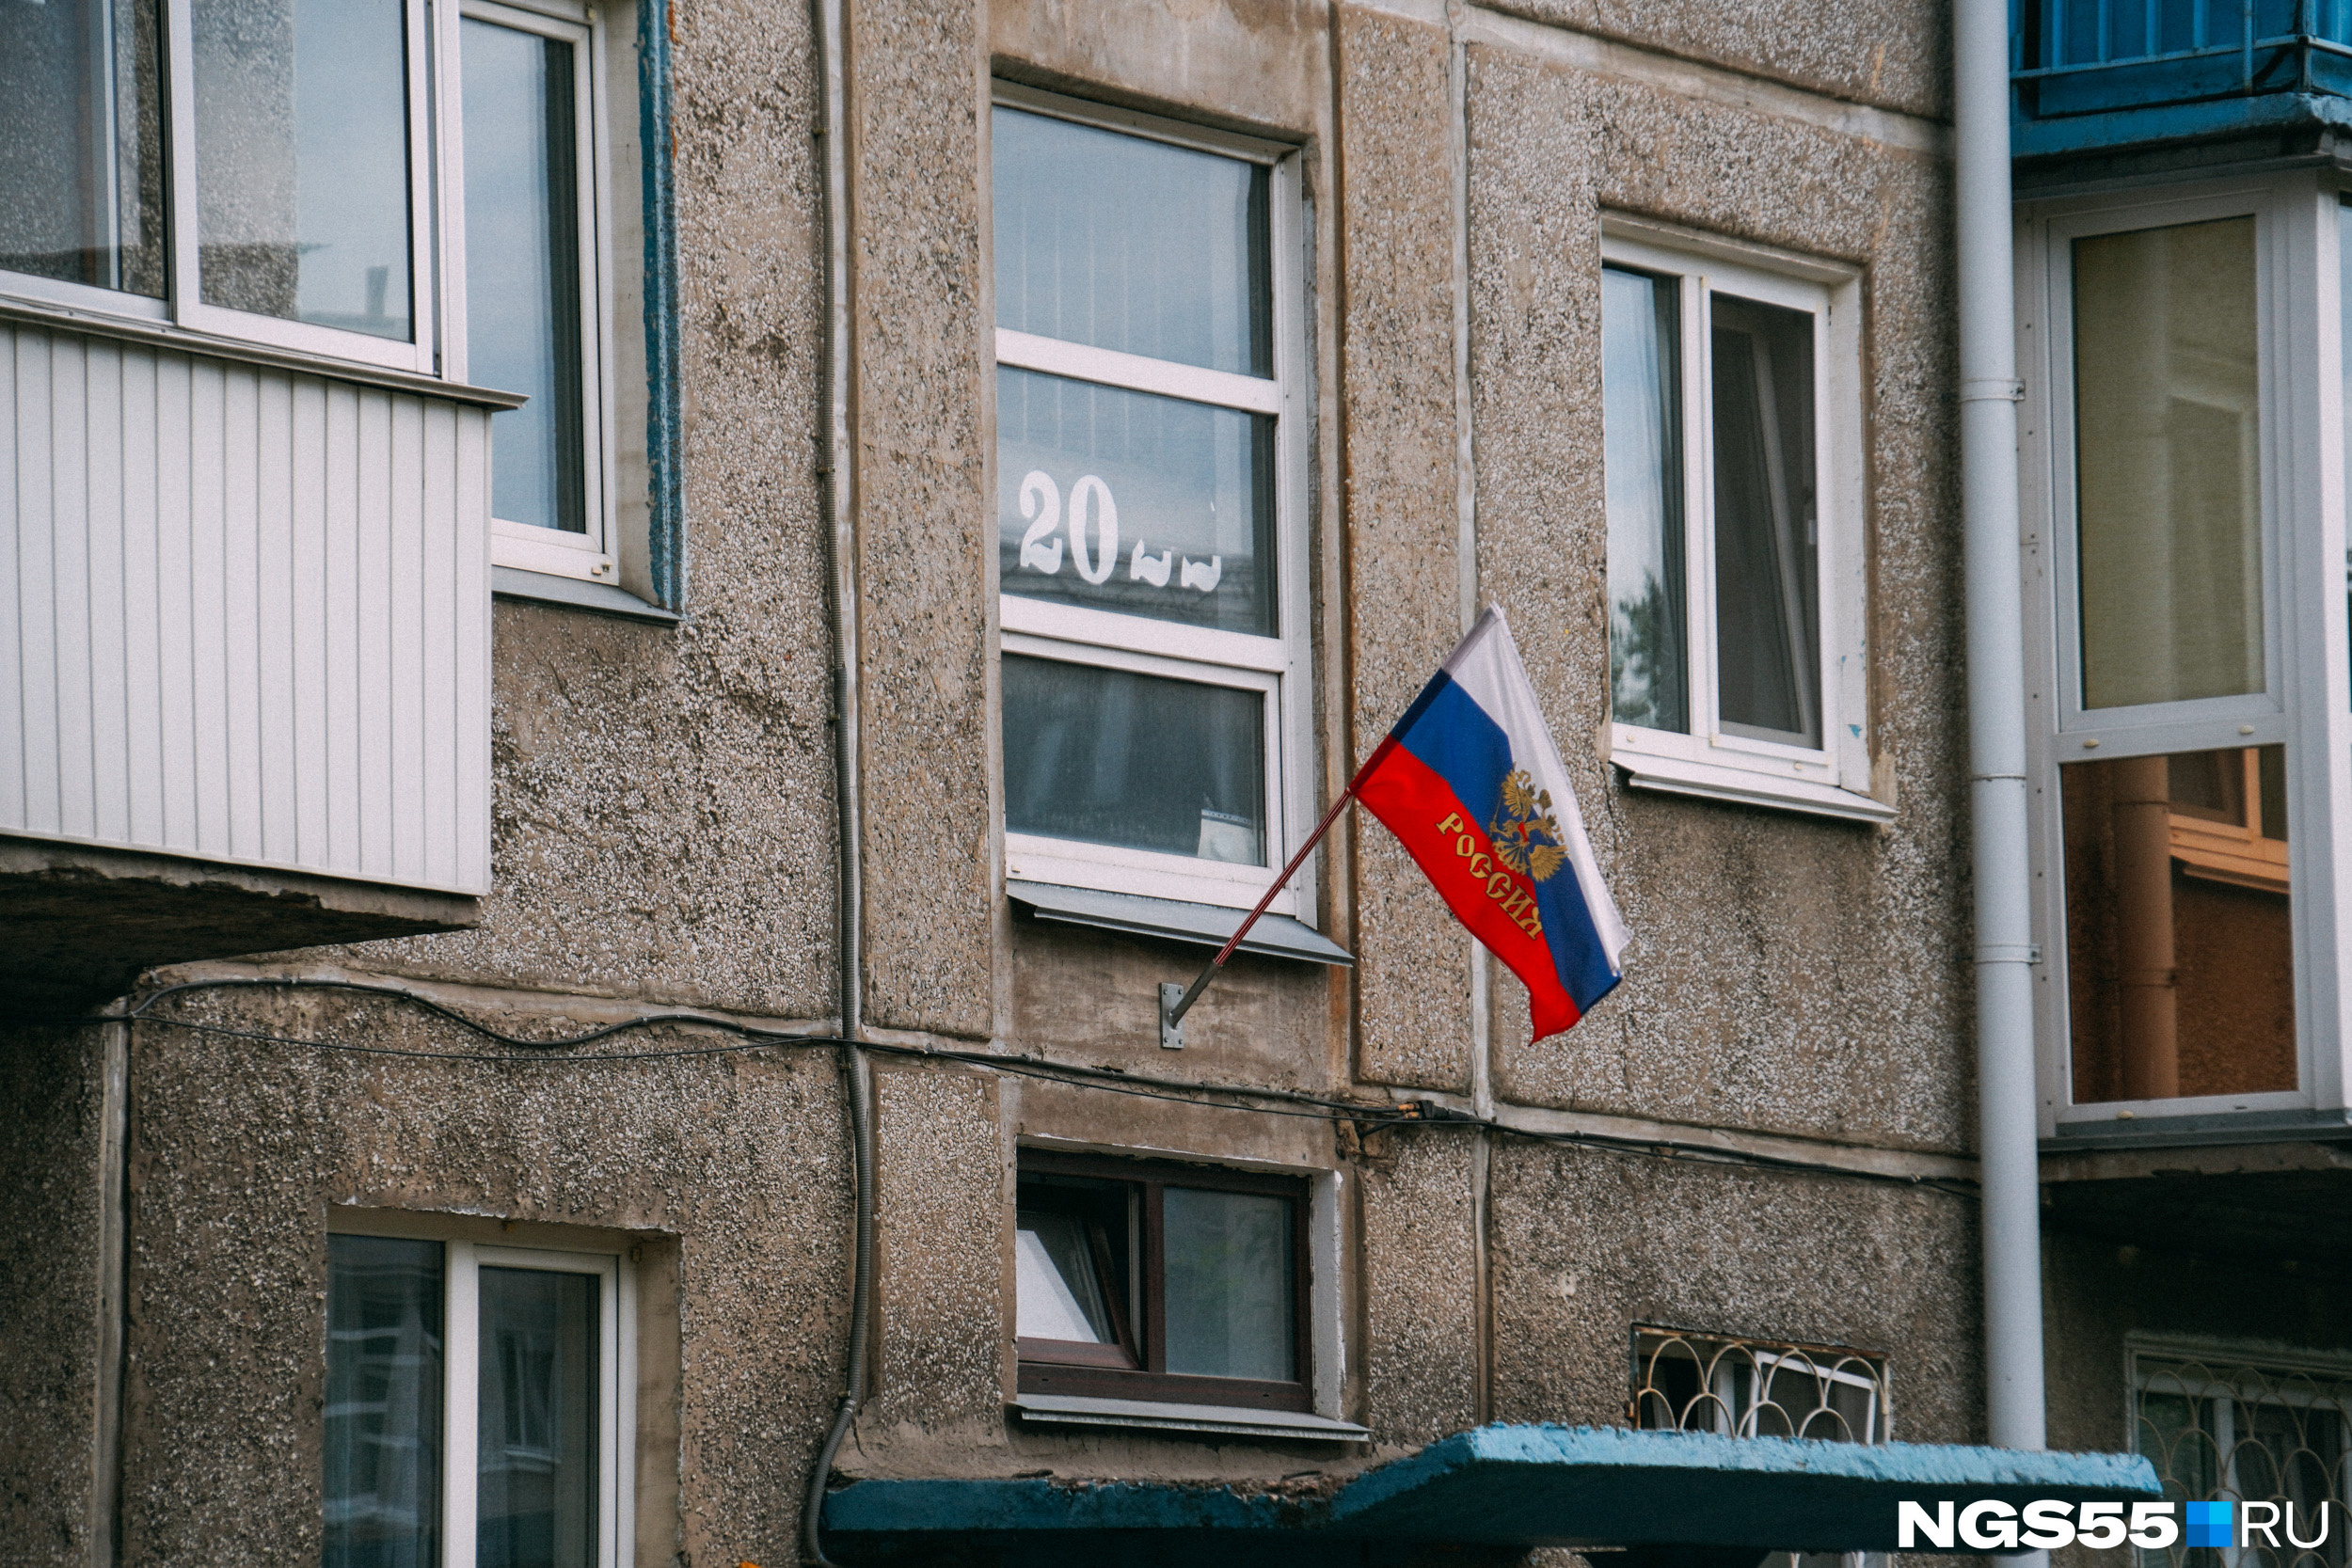 Над каждым подъездом развивается флаг Российской Федерации